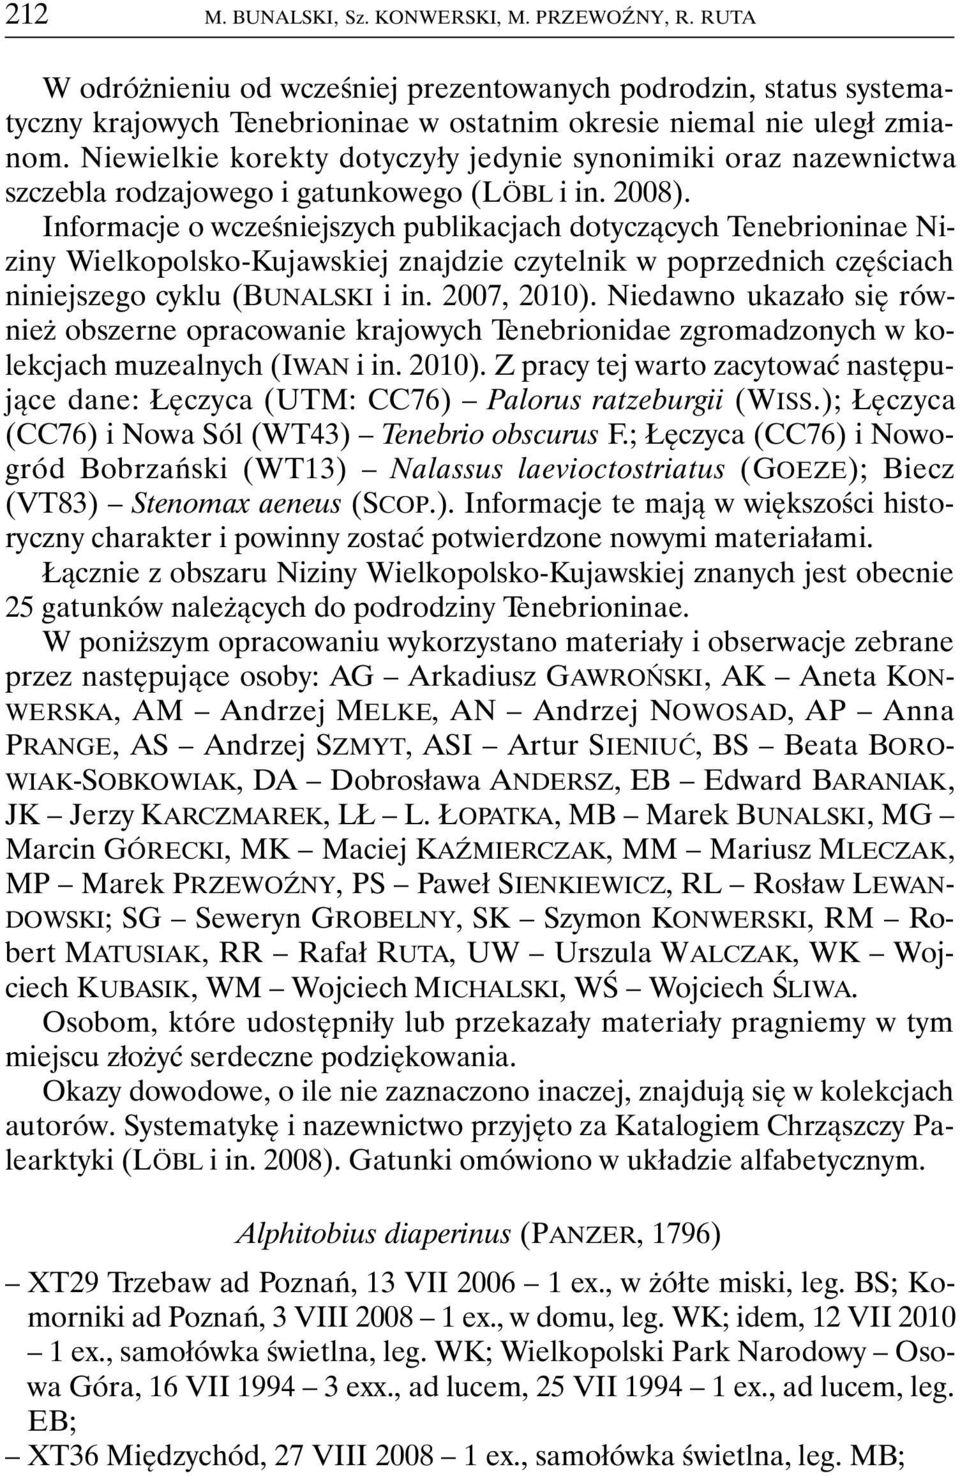 Informacje o wcześniejszych publikacjach dotyczących Tenebrioninae Niziny Wielkopolsko-Kujawskiej znajdzie czytelnik w poprzednich częściach niniejszego cyklu (BUNALSKI i in. 2007, 2010).